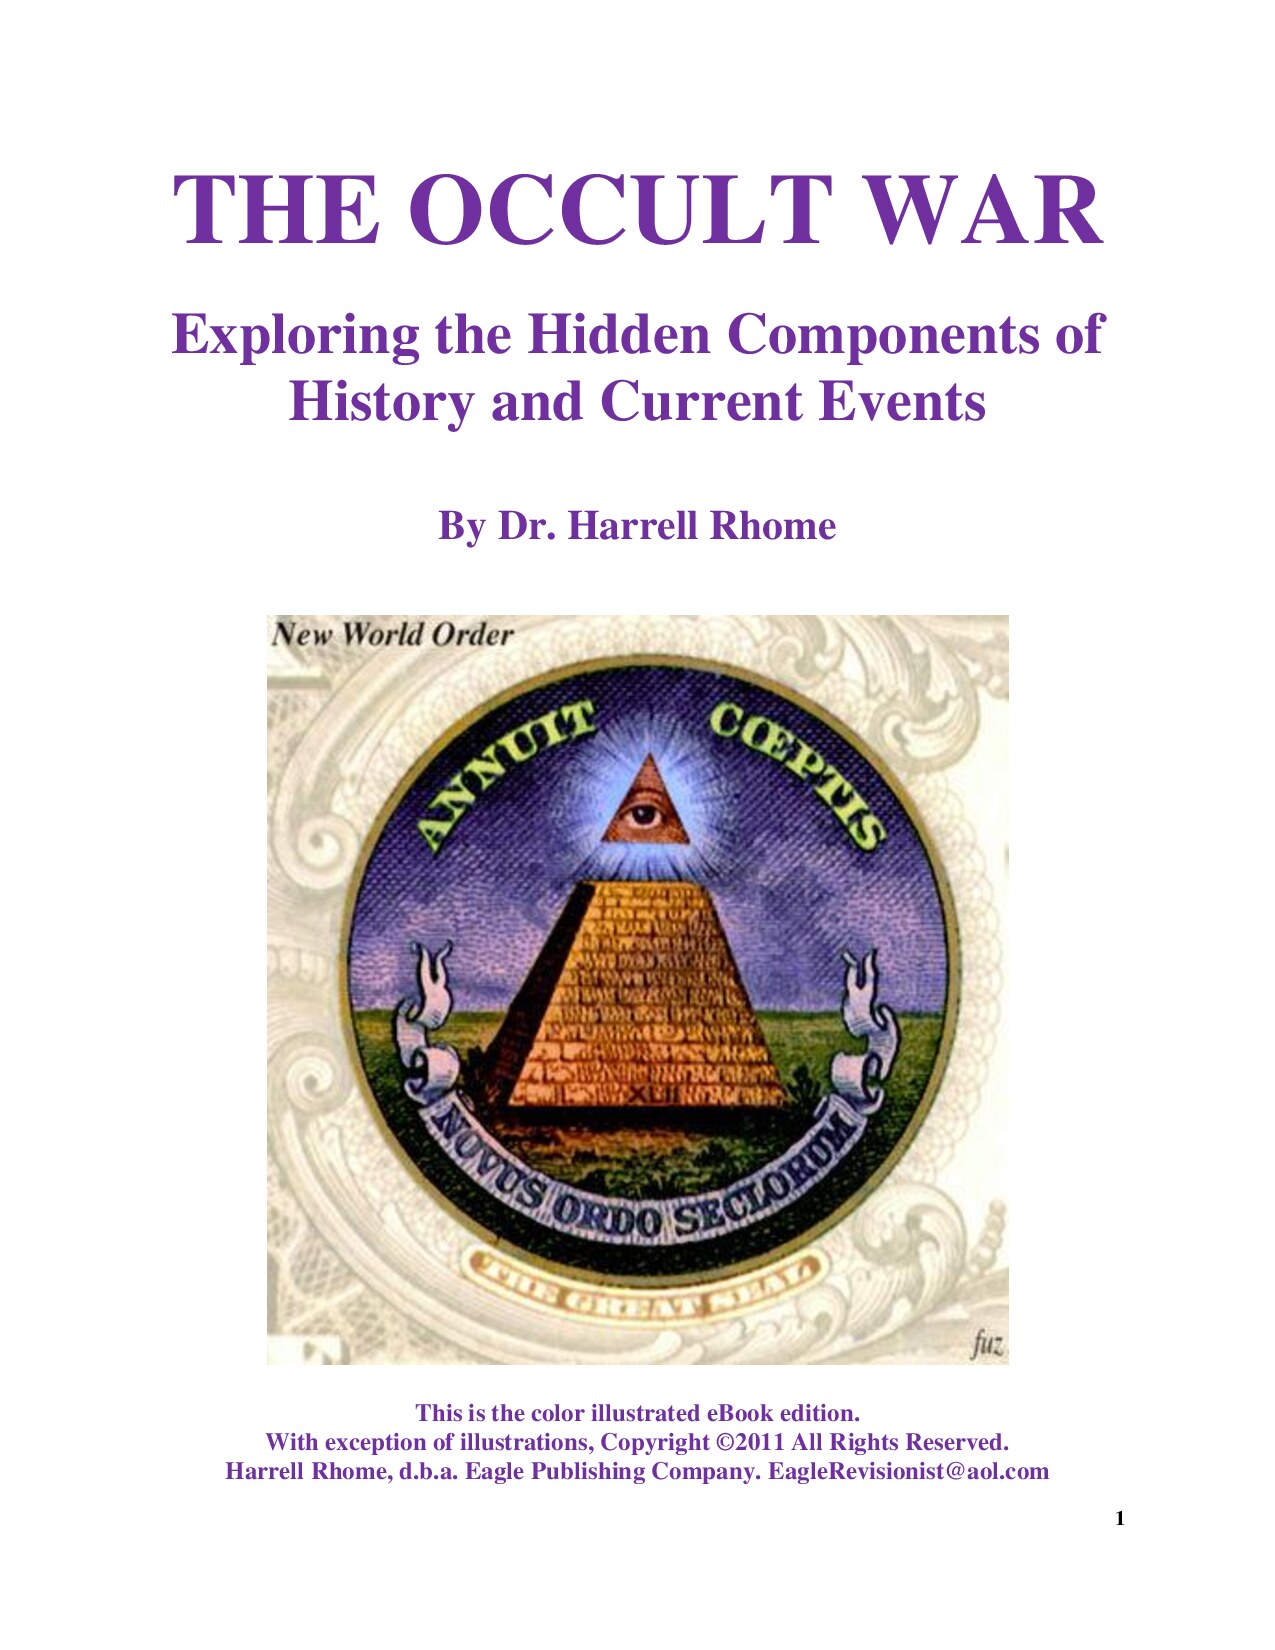 Rhome, Harrell; The Occult War